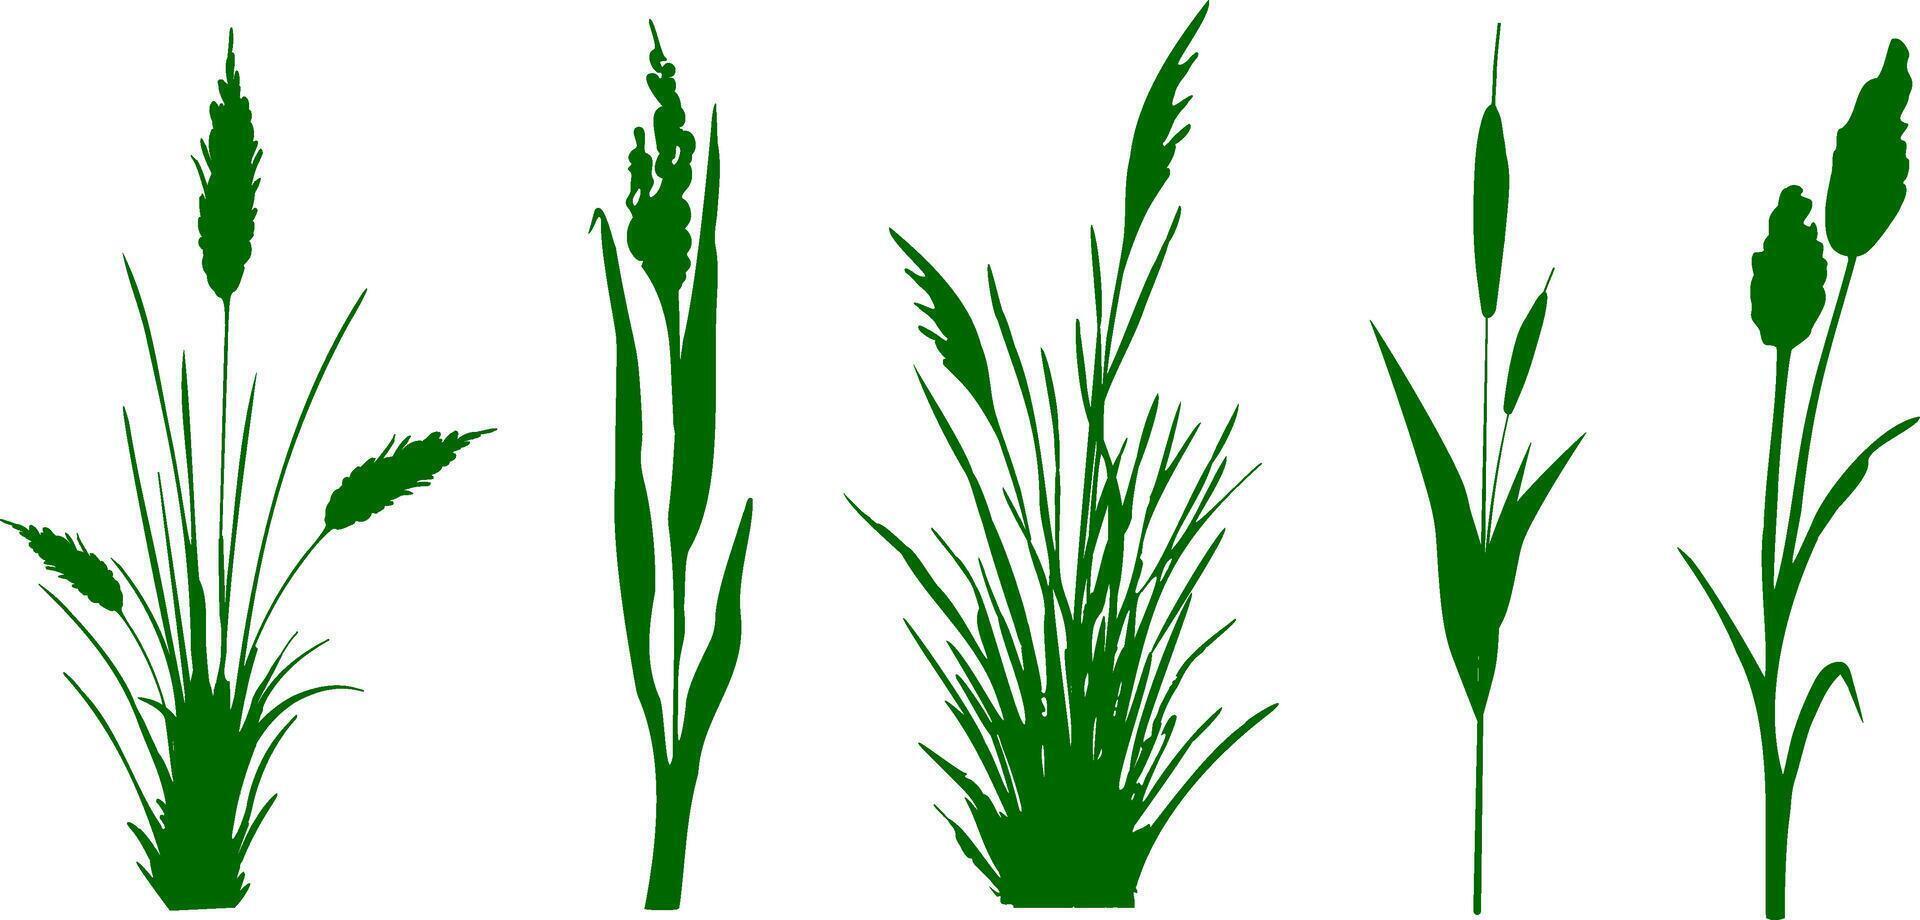 image de une monochrome roseau, herbe ou jonc sur une blanc arrière-plan.isolé vecteur dessin.noir herbe graphique silhouette.